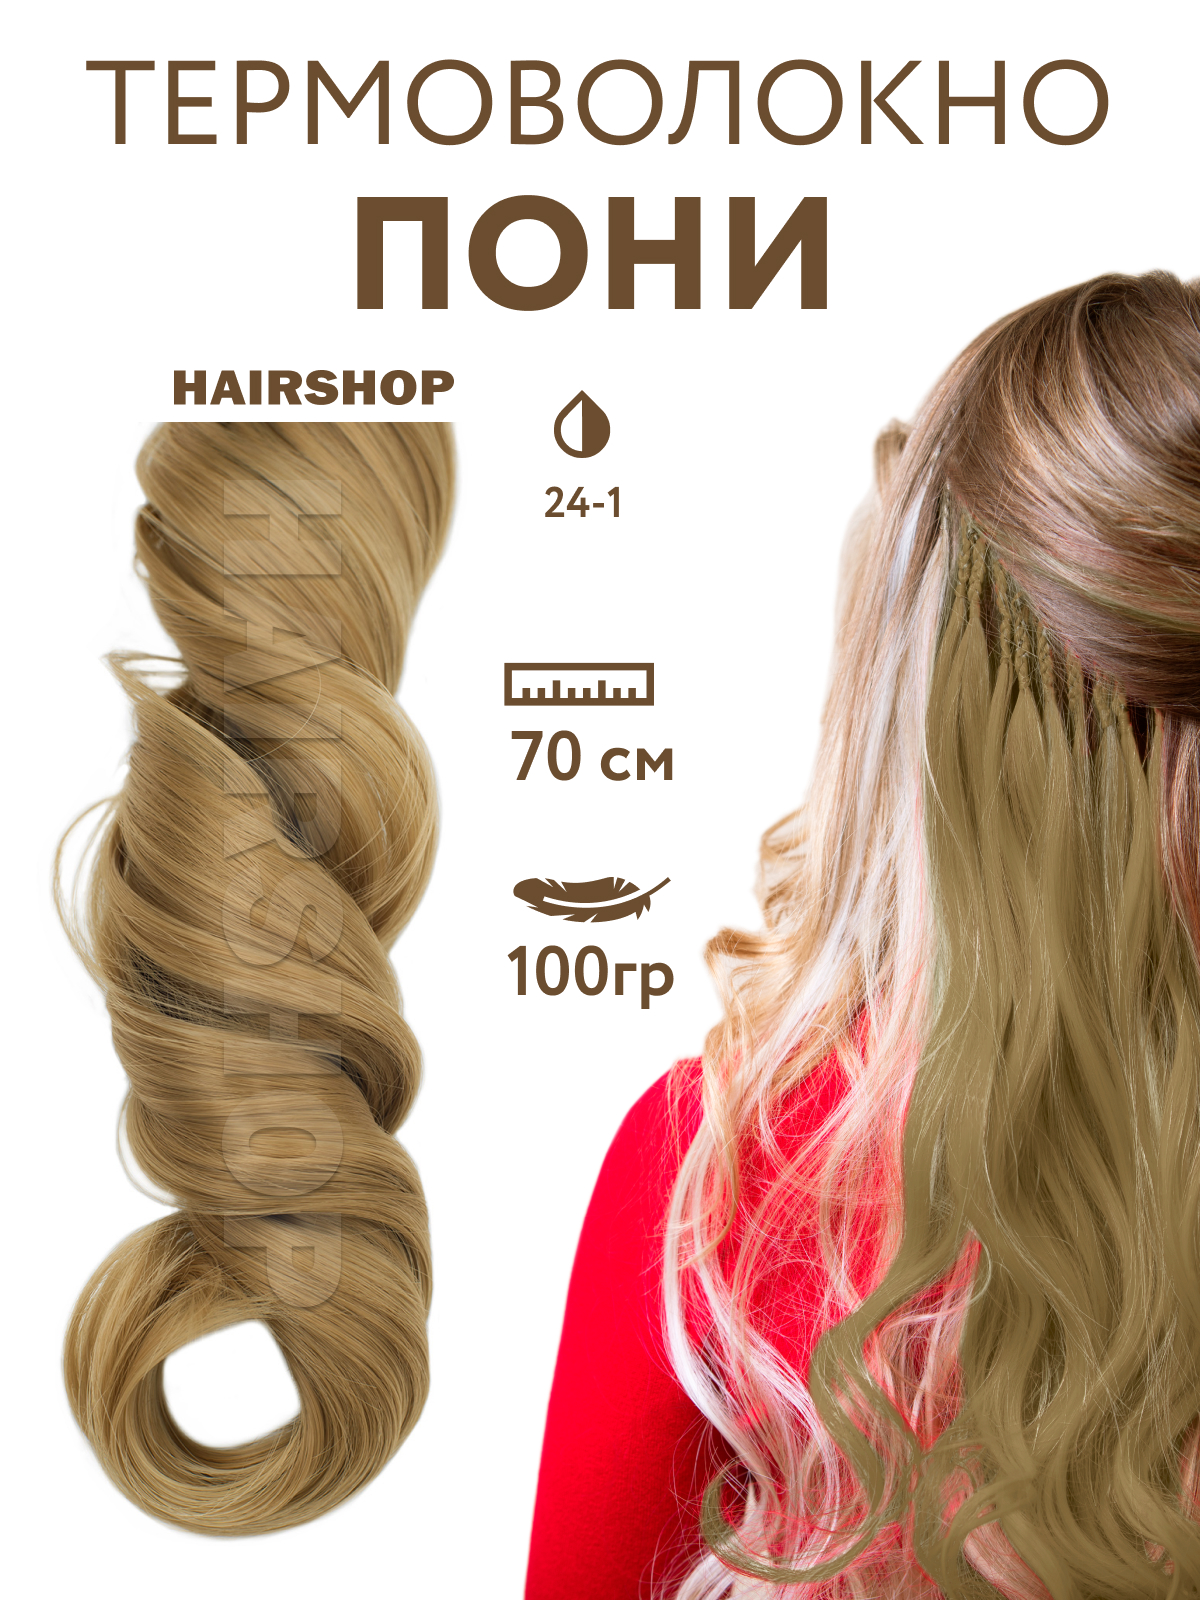 Канекалон HAIRSHOP Пони HairUp для точечного афронаращивания 24-1 Светло-русый 1,4м